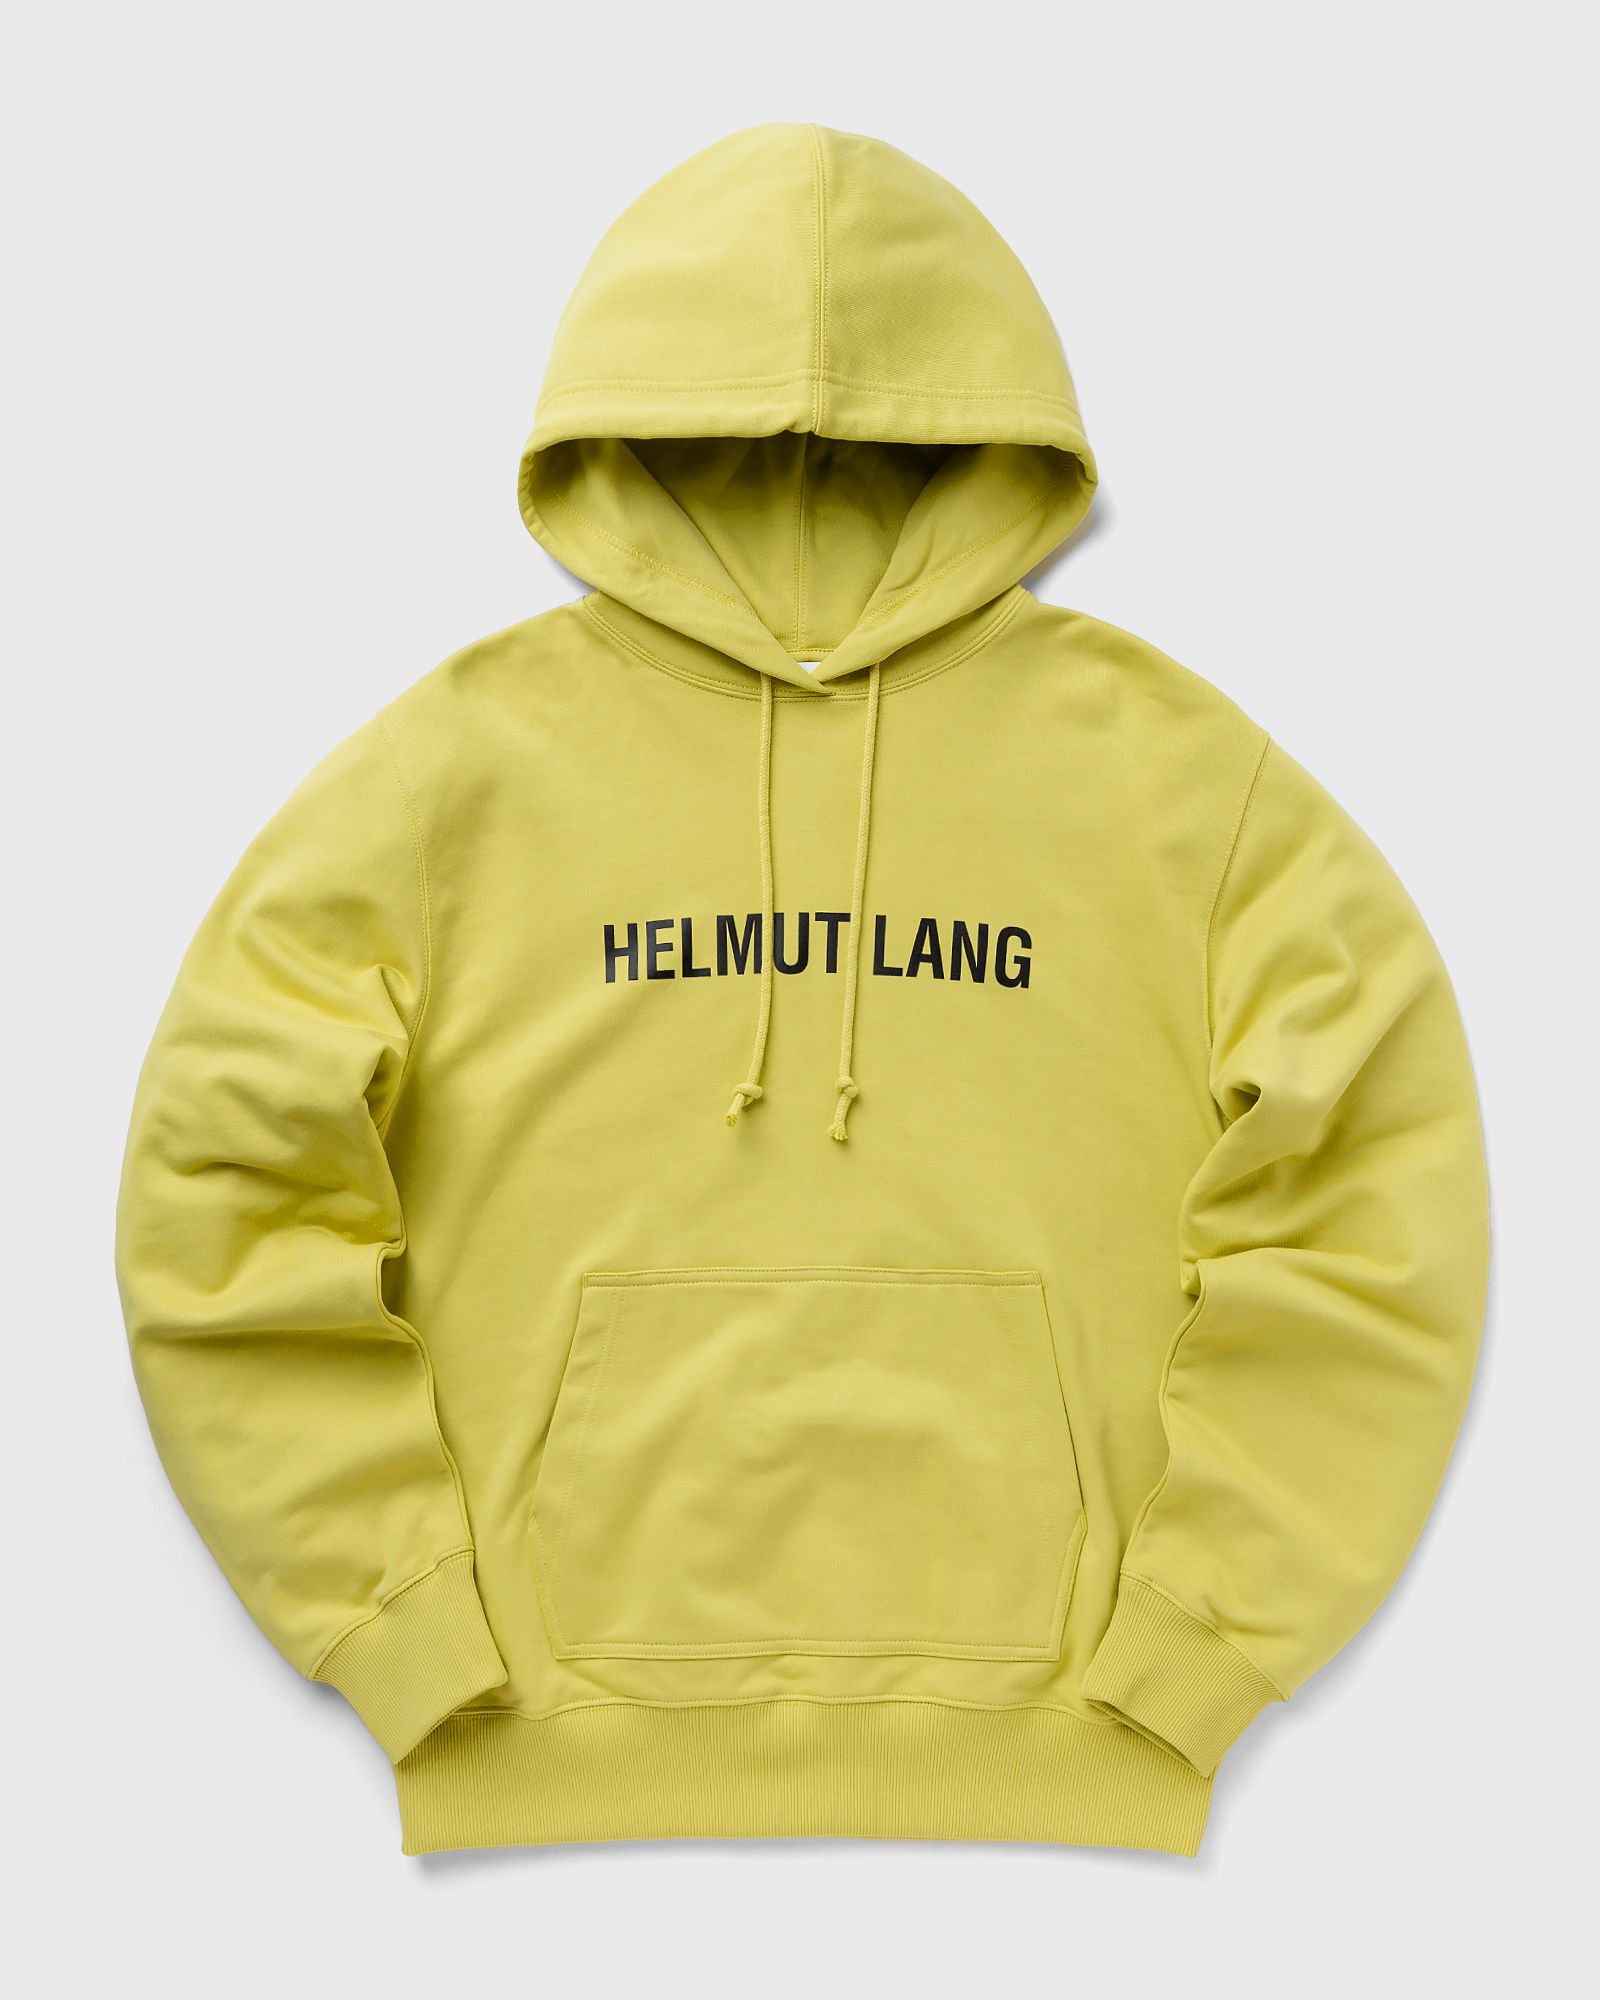 Helmut Lang - core hoodie 2 men hoodies yellow in größe:xxl